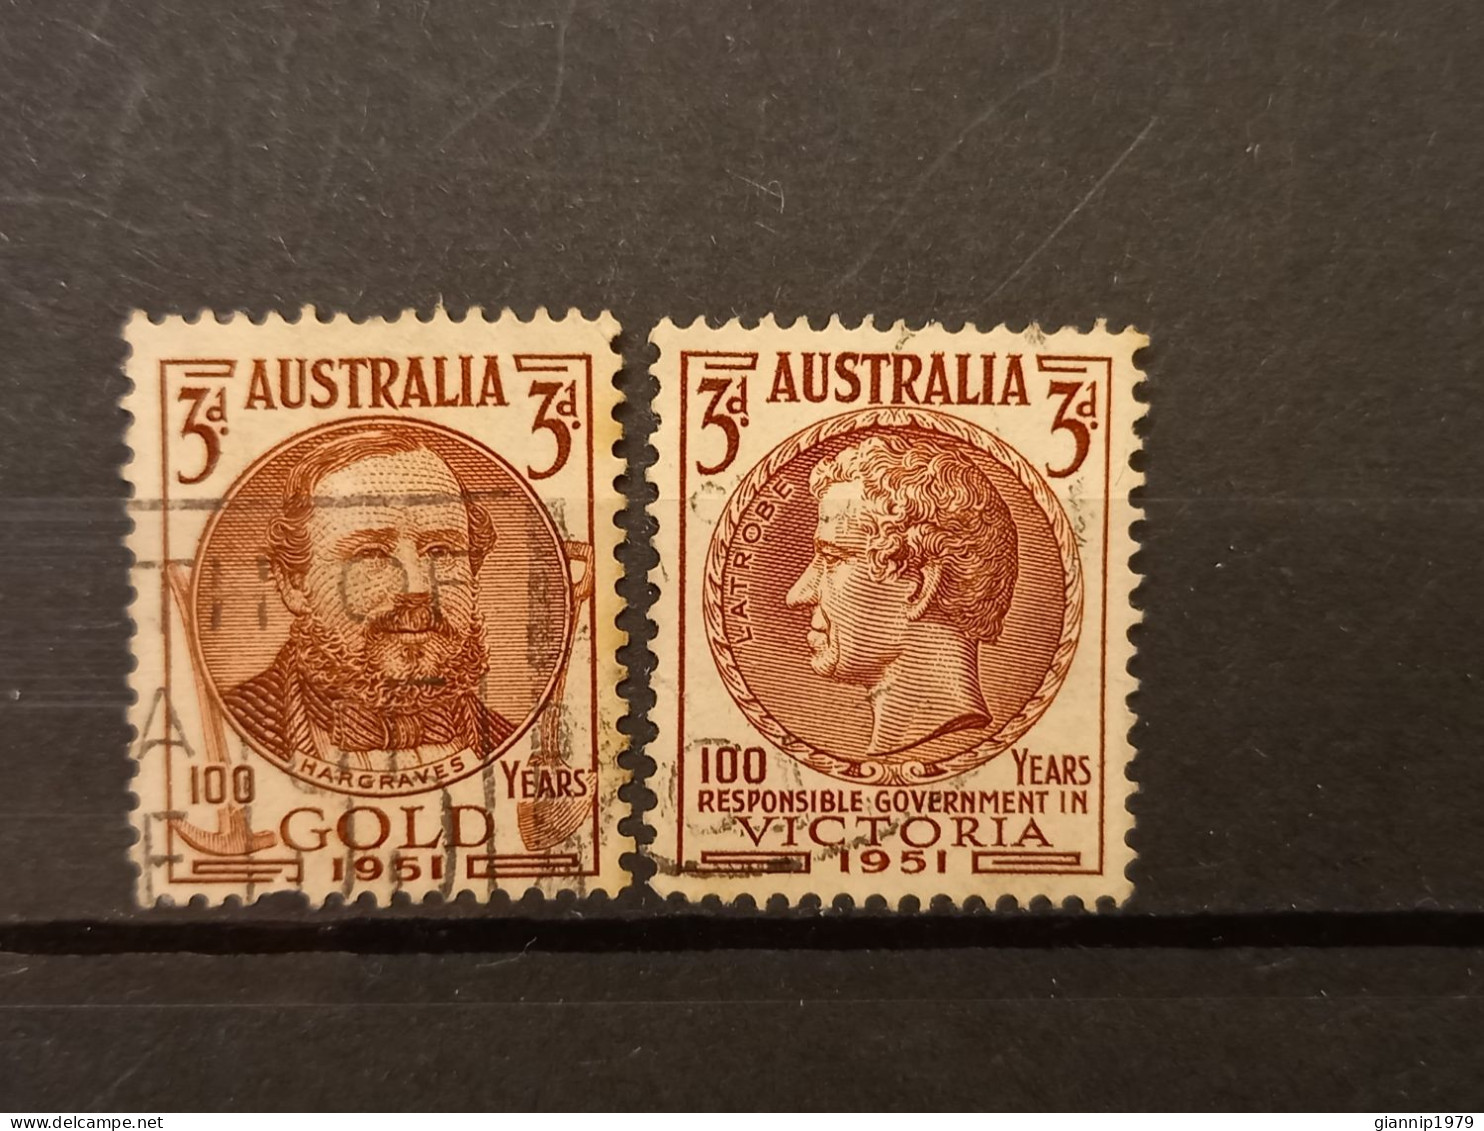 FRANCOBOLLI STAMPS AUSTRALIA AUSTRALIAN 1951 USED SERIE COMPLETE COMPLETA 100 ANNI ANNIVERSARY ORO VICTORIA OBLITERE' - Gebraucht